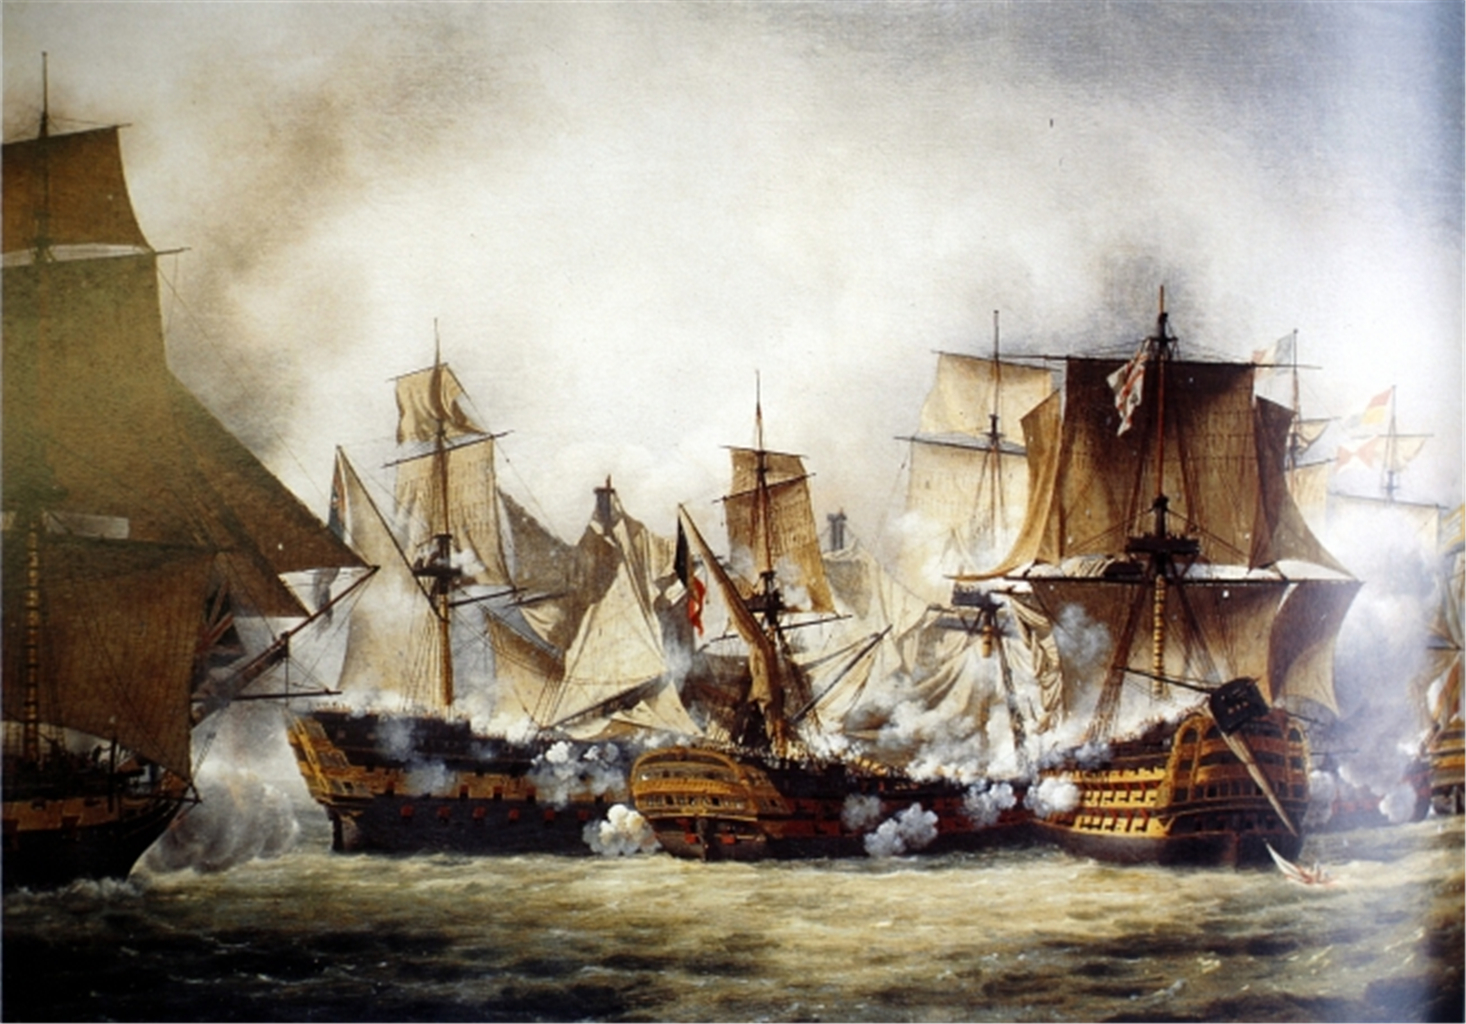 哥伦布对航海的执着,亚历山大的提议,使进一步探险难以开展